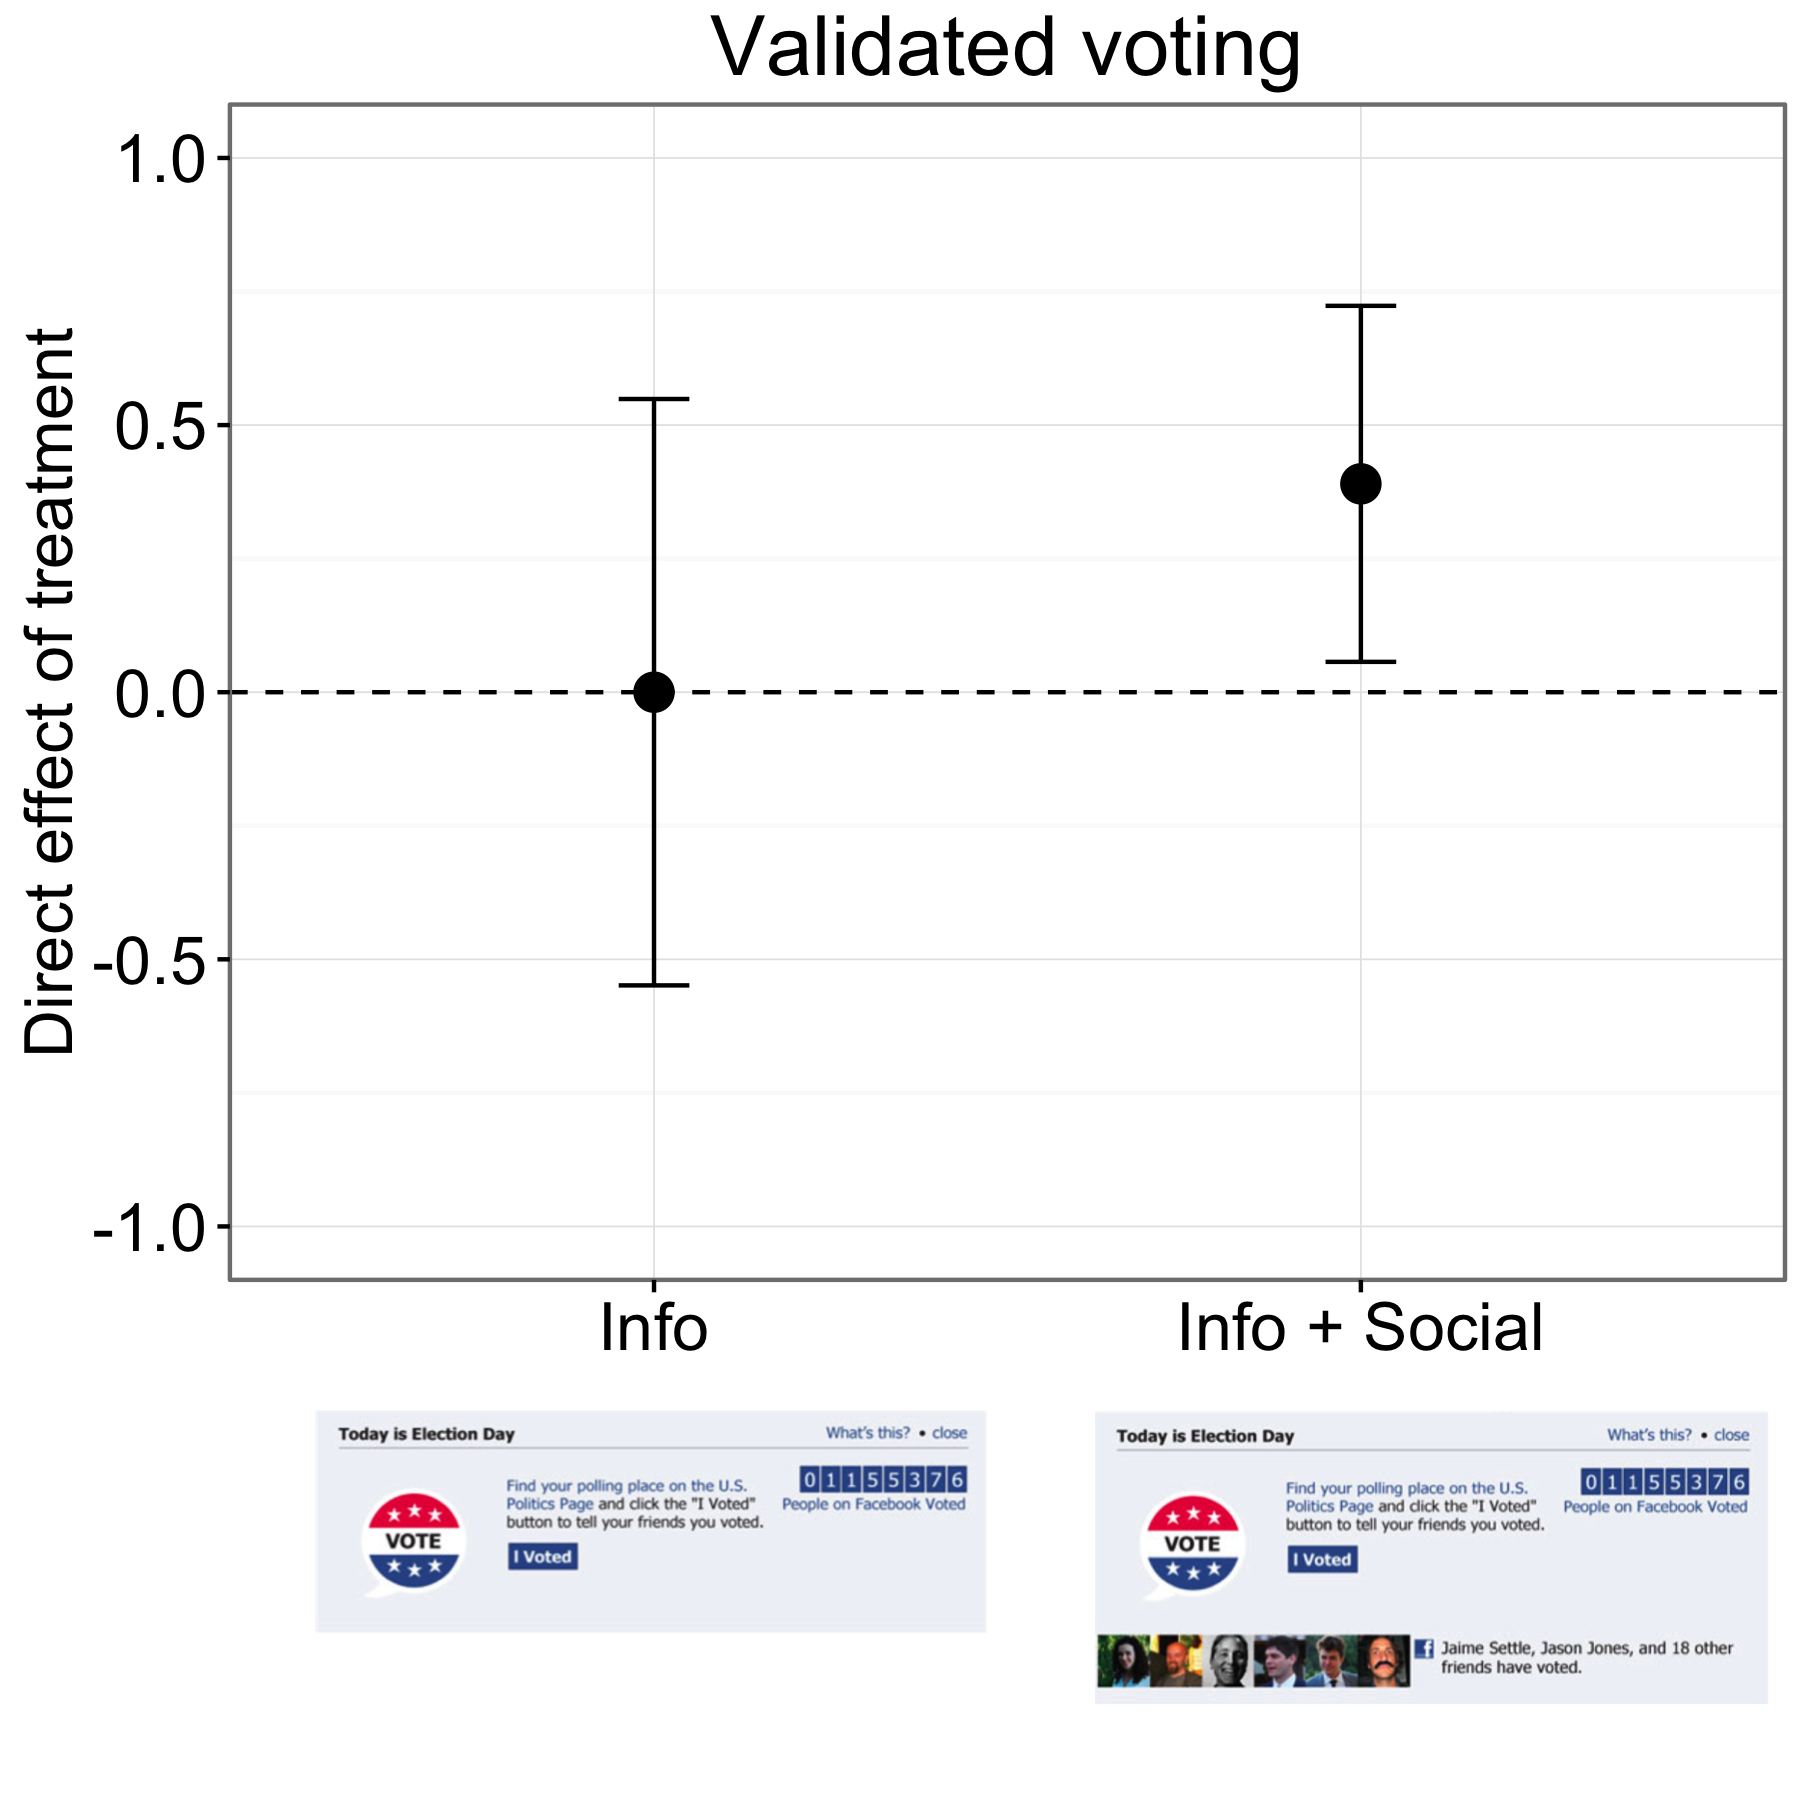 Слика 4.18: Резултати од експериментот за добивање на глас на Фејсбук (Бонд и соработници 2012). Учесниците во Инфо групата гласаа со иста стапка како и оние во контролната група, но луѓето во Инфо + Социјалната група гласаа со малку повисока стапка. Баровите претставуваат околу 95% интервали на доверба. Резултатите во графиконот се за приближно шест милиони учесници кои се совпаднаа со записите за гласање. Адаптиран од Бонд и сор. (2012), слика 1.